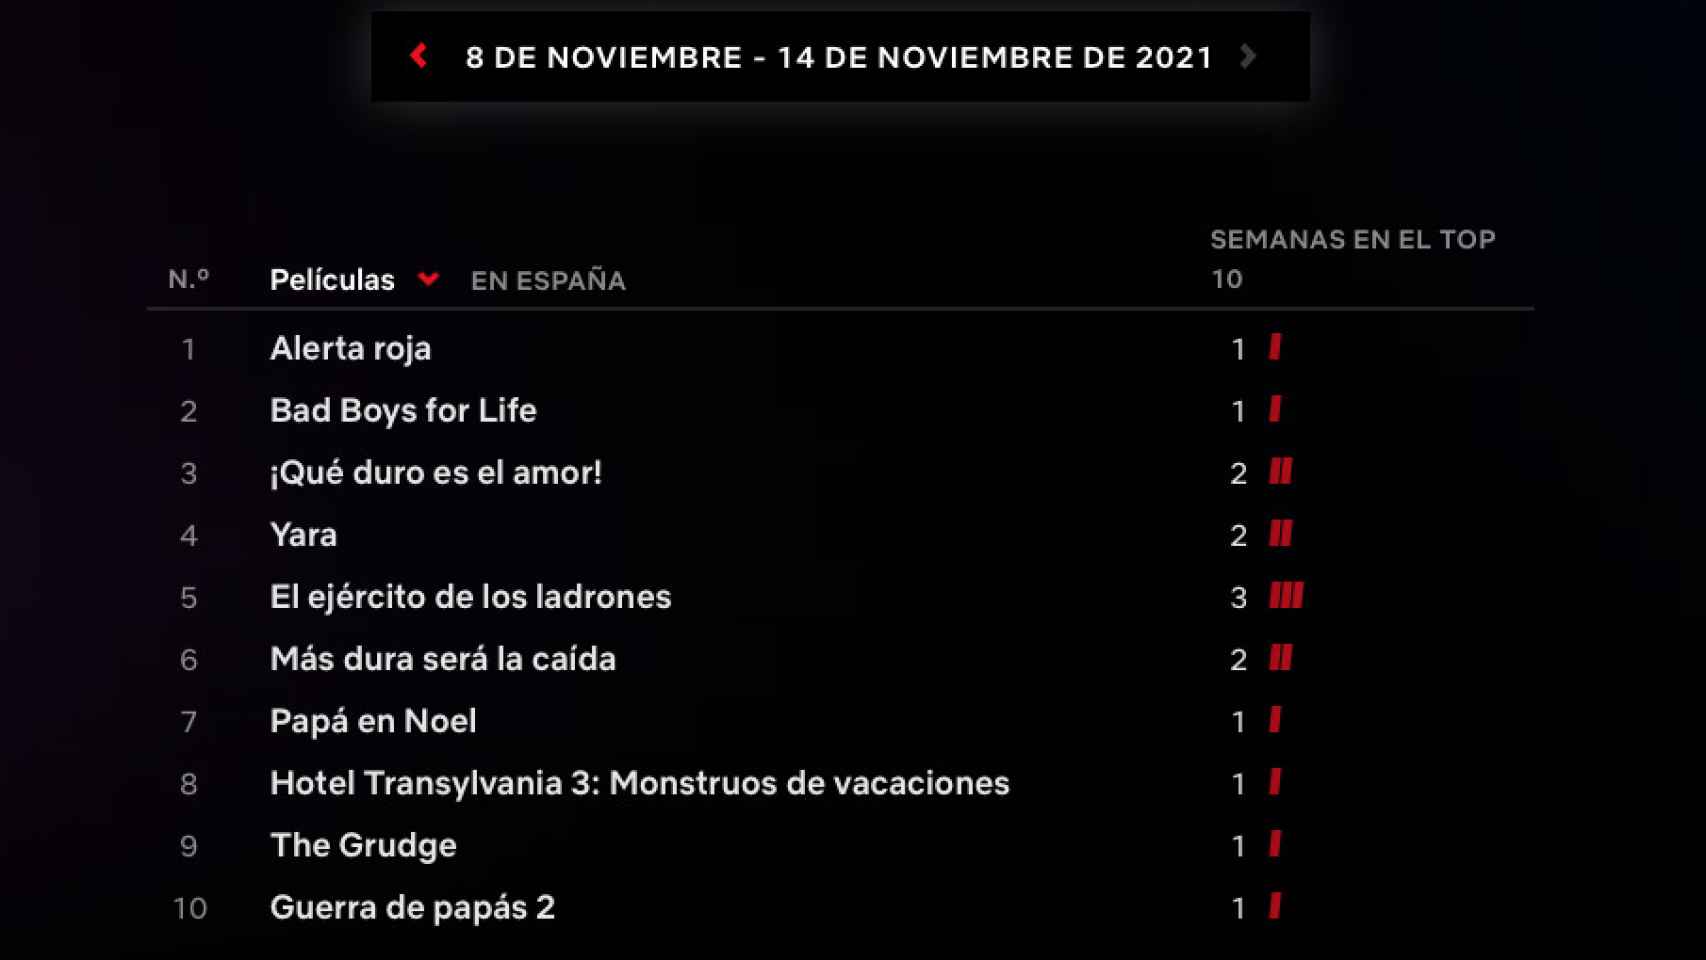 Las películas más populares en España en la semana del 8 de noviembre.